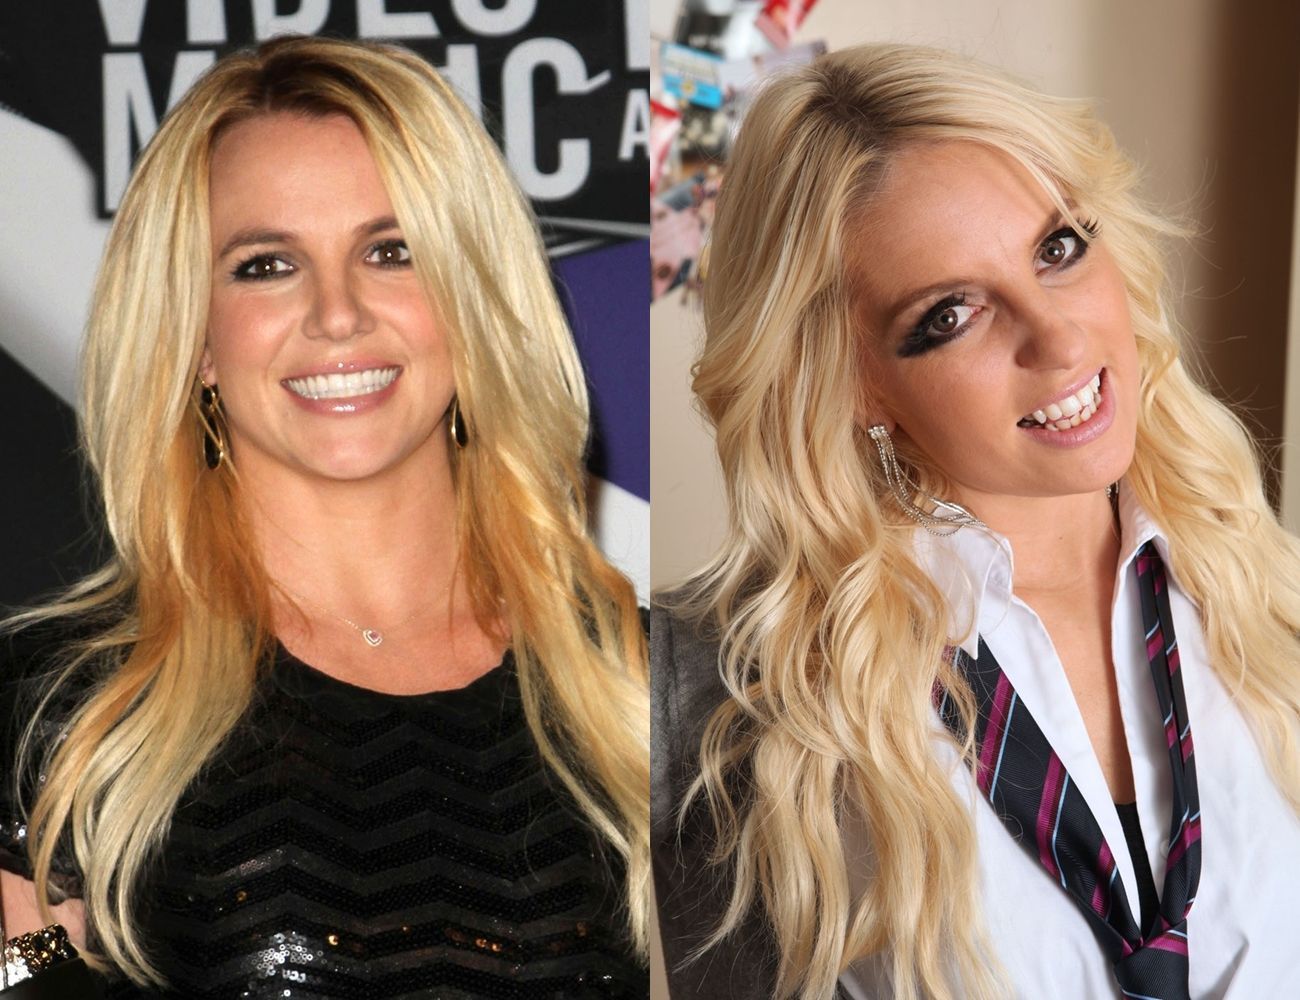 Dvojníci Britney Spears